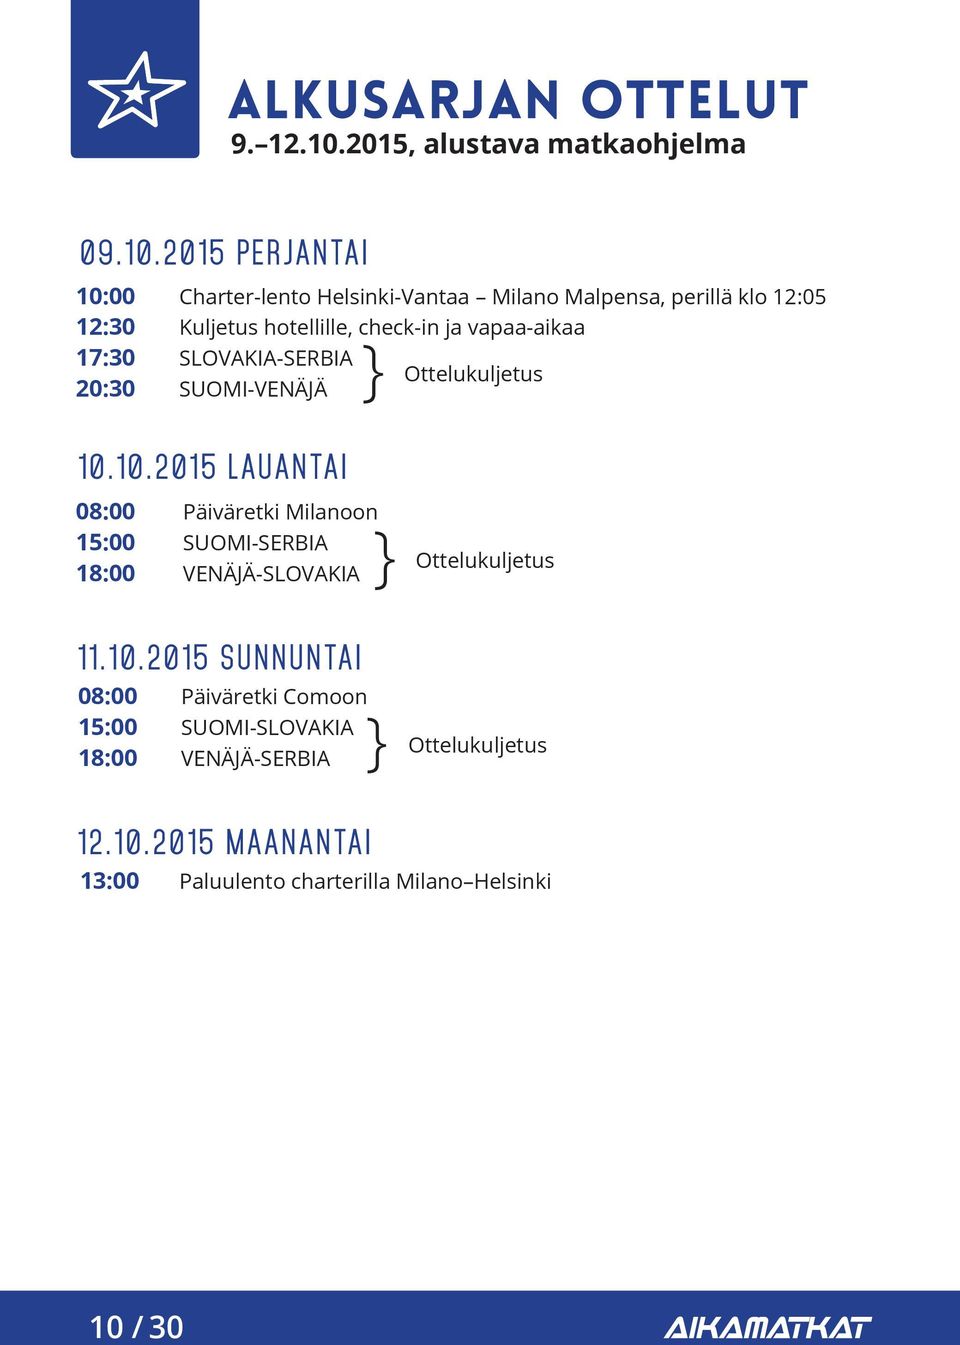 2015 PERJANTAI 10:00 12:30 17:30 20:30 Charter-lento Helsinki-Vantaa Milano Malpensa, perillä klo 12:05 Kuljetus